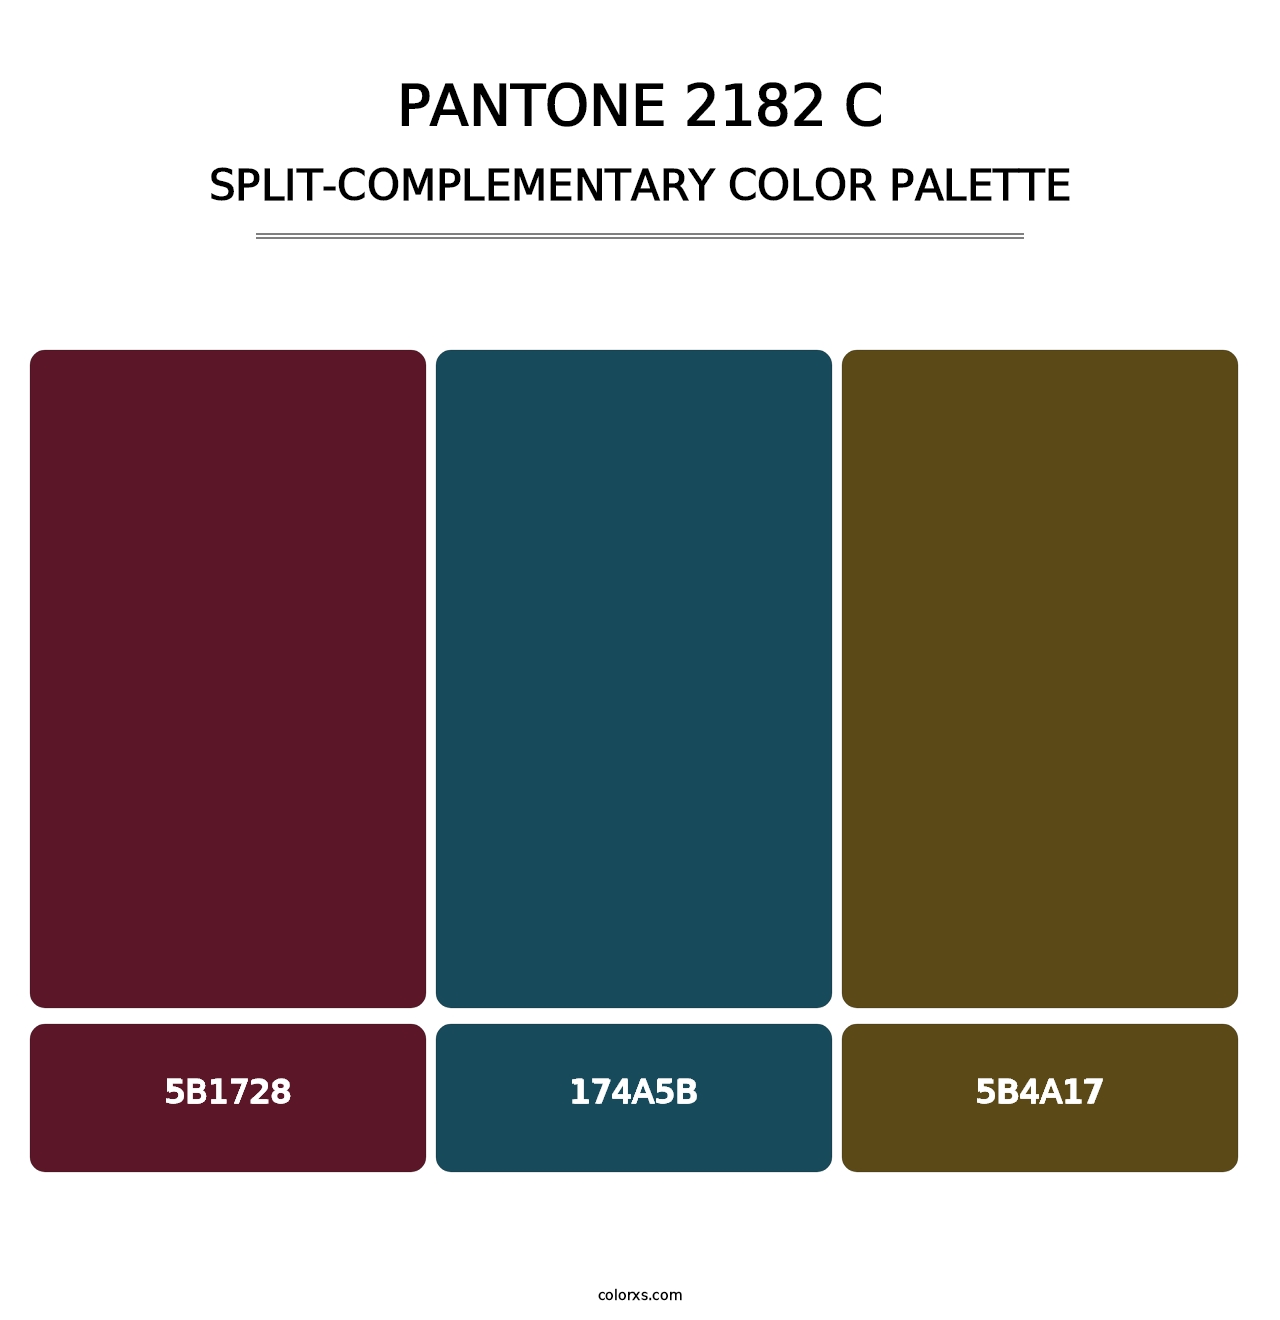 PANTONE 2182 C - Split-Complementary Color Palette